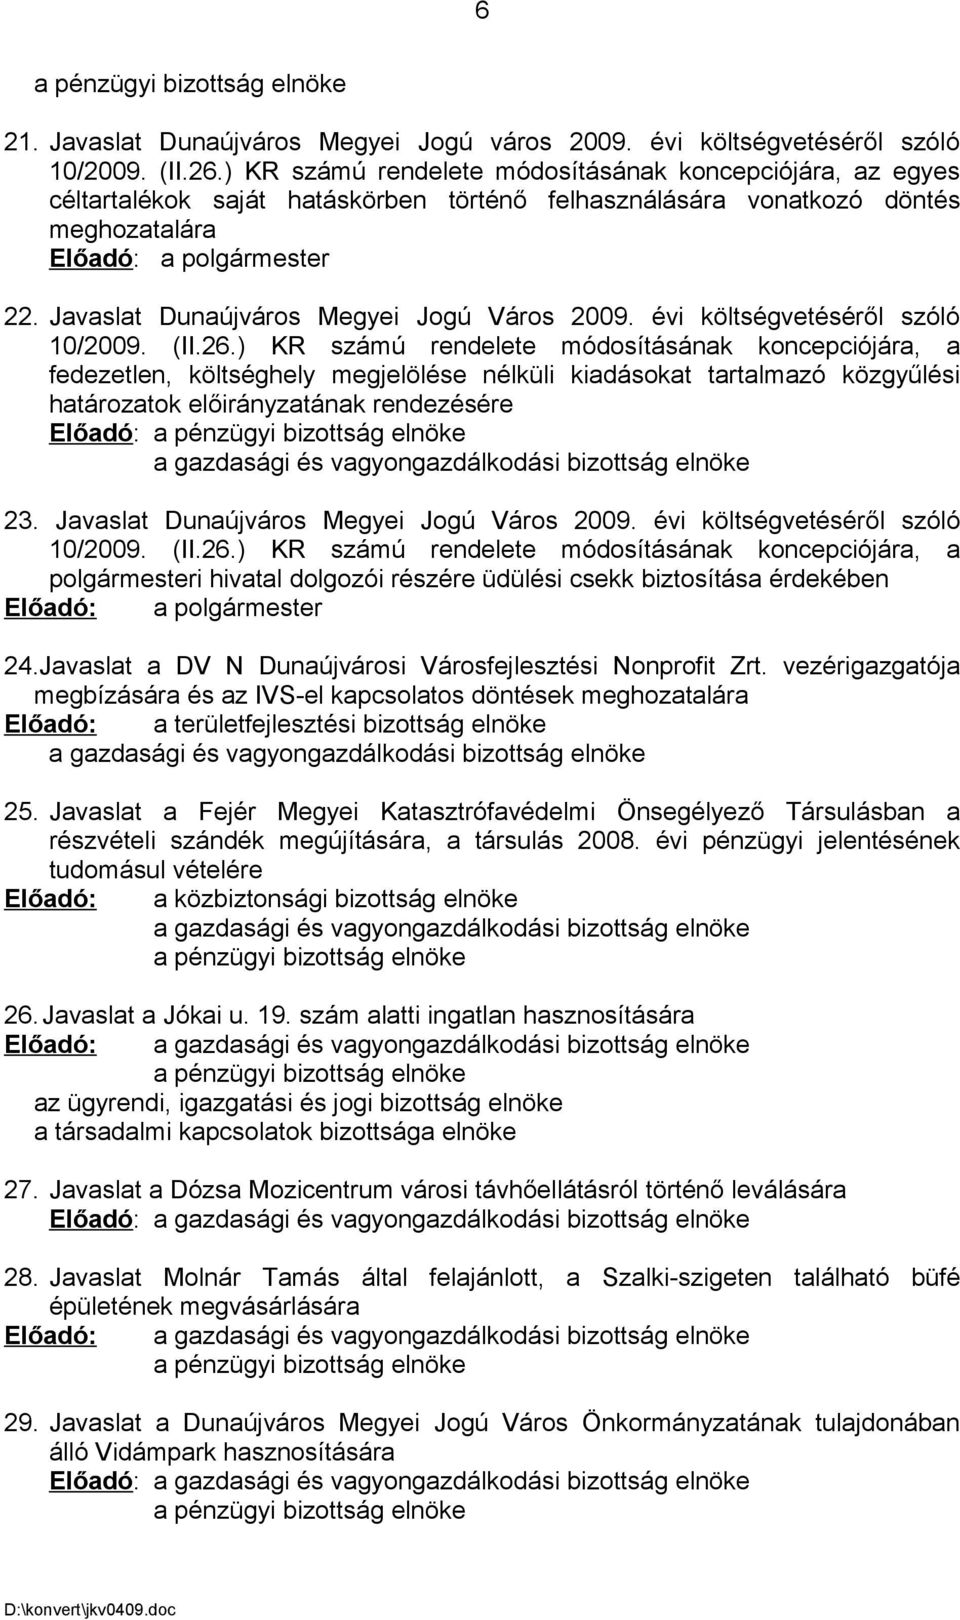 Javaslat Dunaújváros Megyei Jogú Város 2009. évi költségvetéséről szóló 10/2009. (II.26.